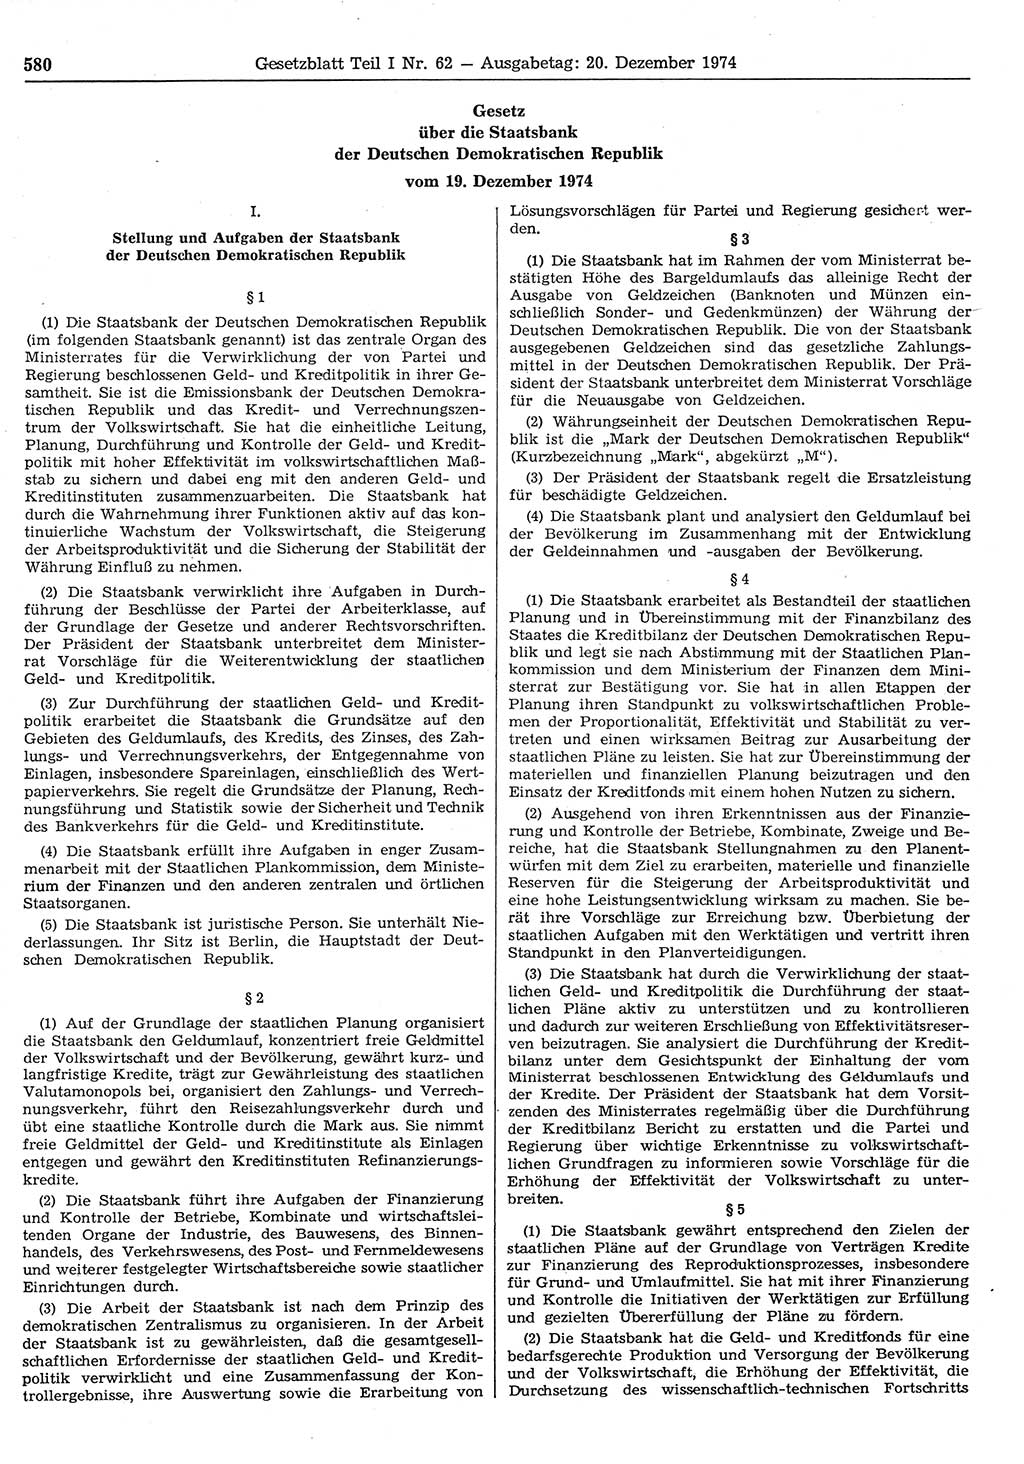 Gesetzblatt (GBl.) der Deutschen Demokratischen Republik (DDR) Teil Ⅰ 1974, Seite 580 (GBl. DDR Ⅰ 1974, S. 580)